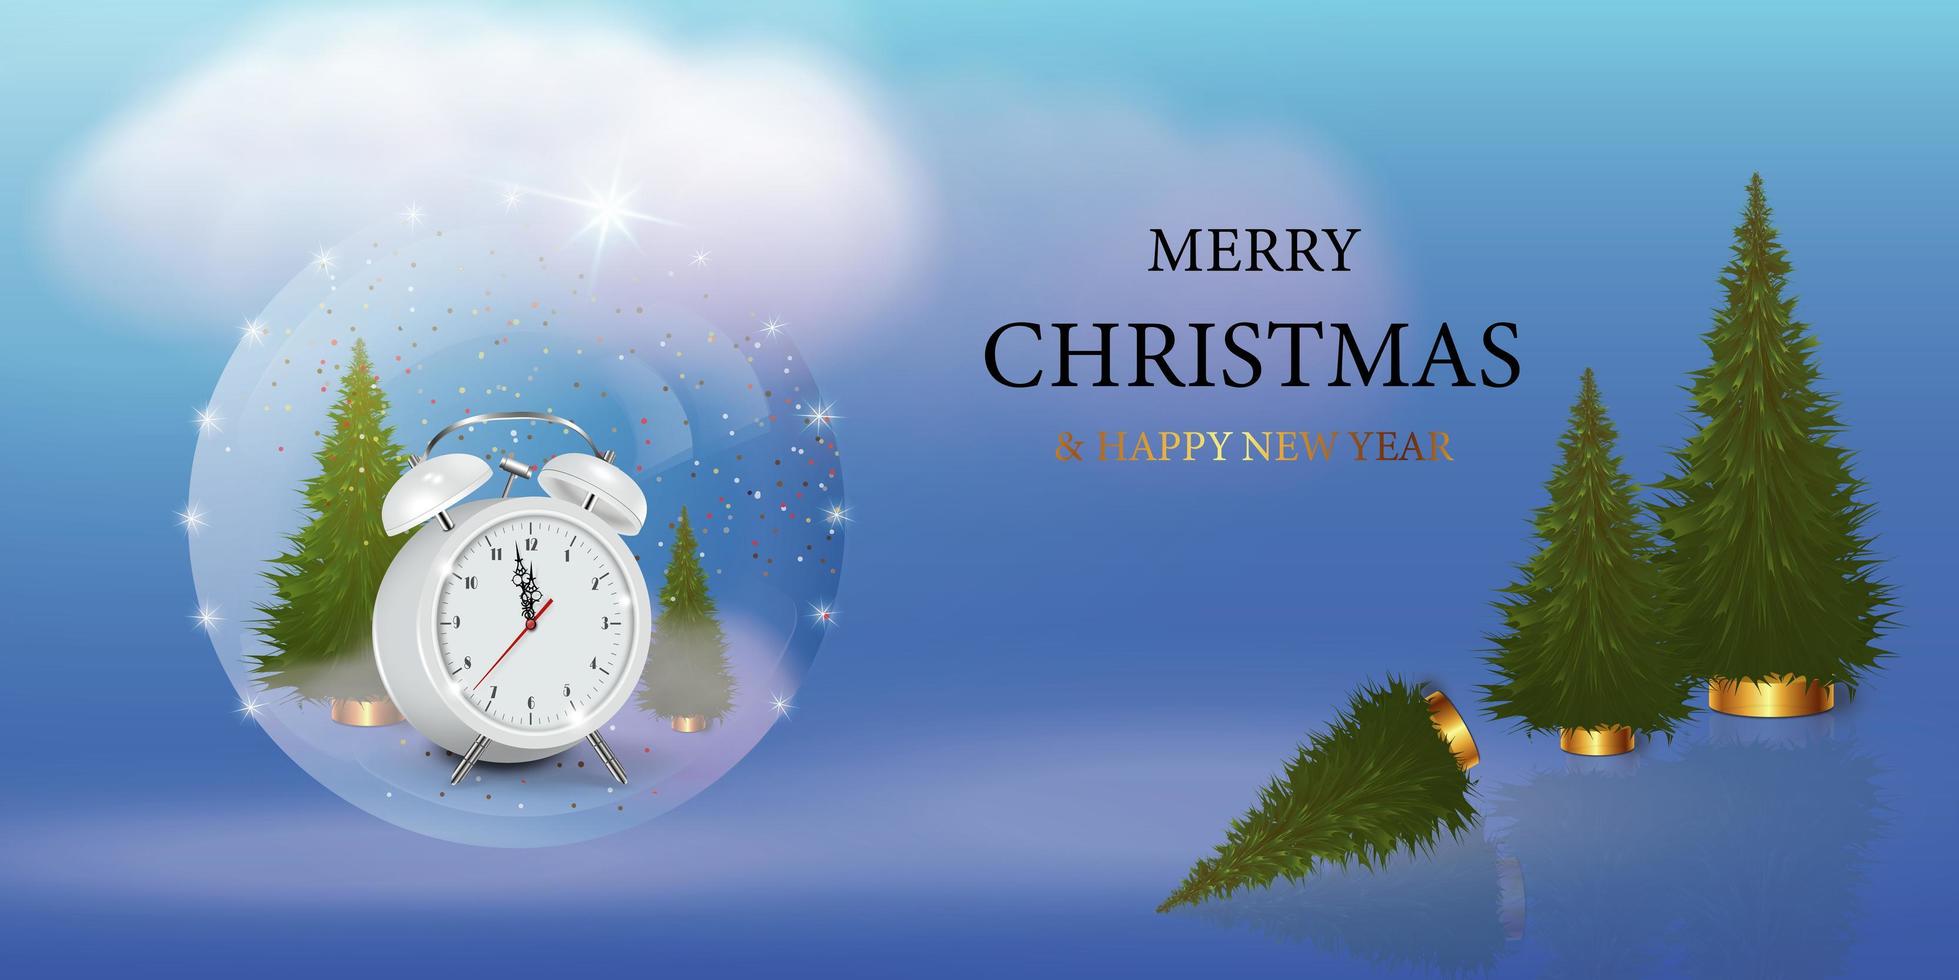 gott nytt år och god jul banner. en julsnöboll med träd och en väckarklocka. glas snöglob realistisk 3d-design. ett festligt julobjekt. semesteraffisch, webbplatstitel, hälsning vektor